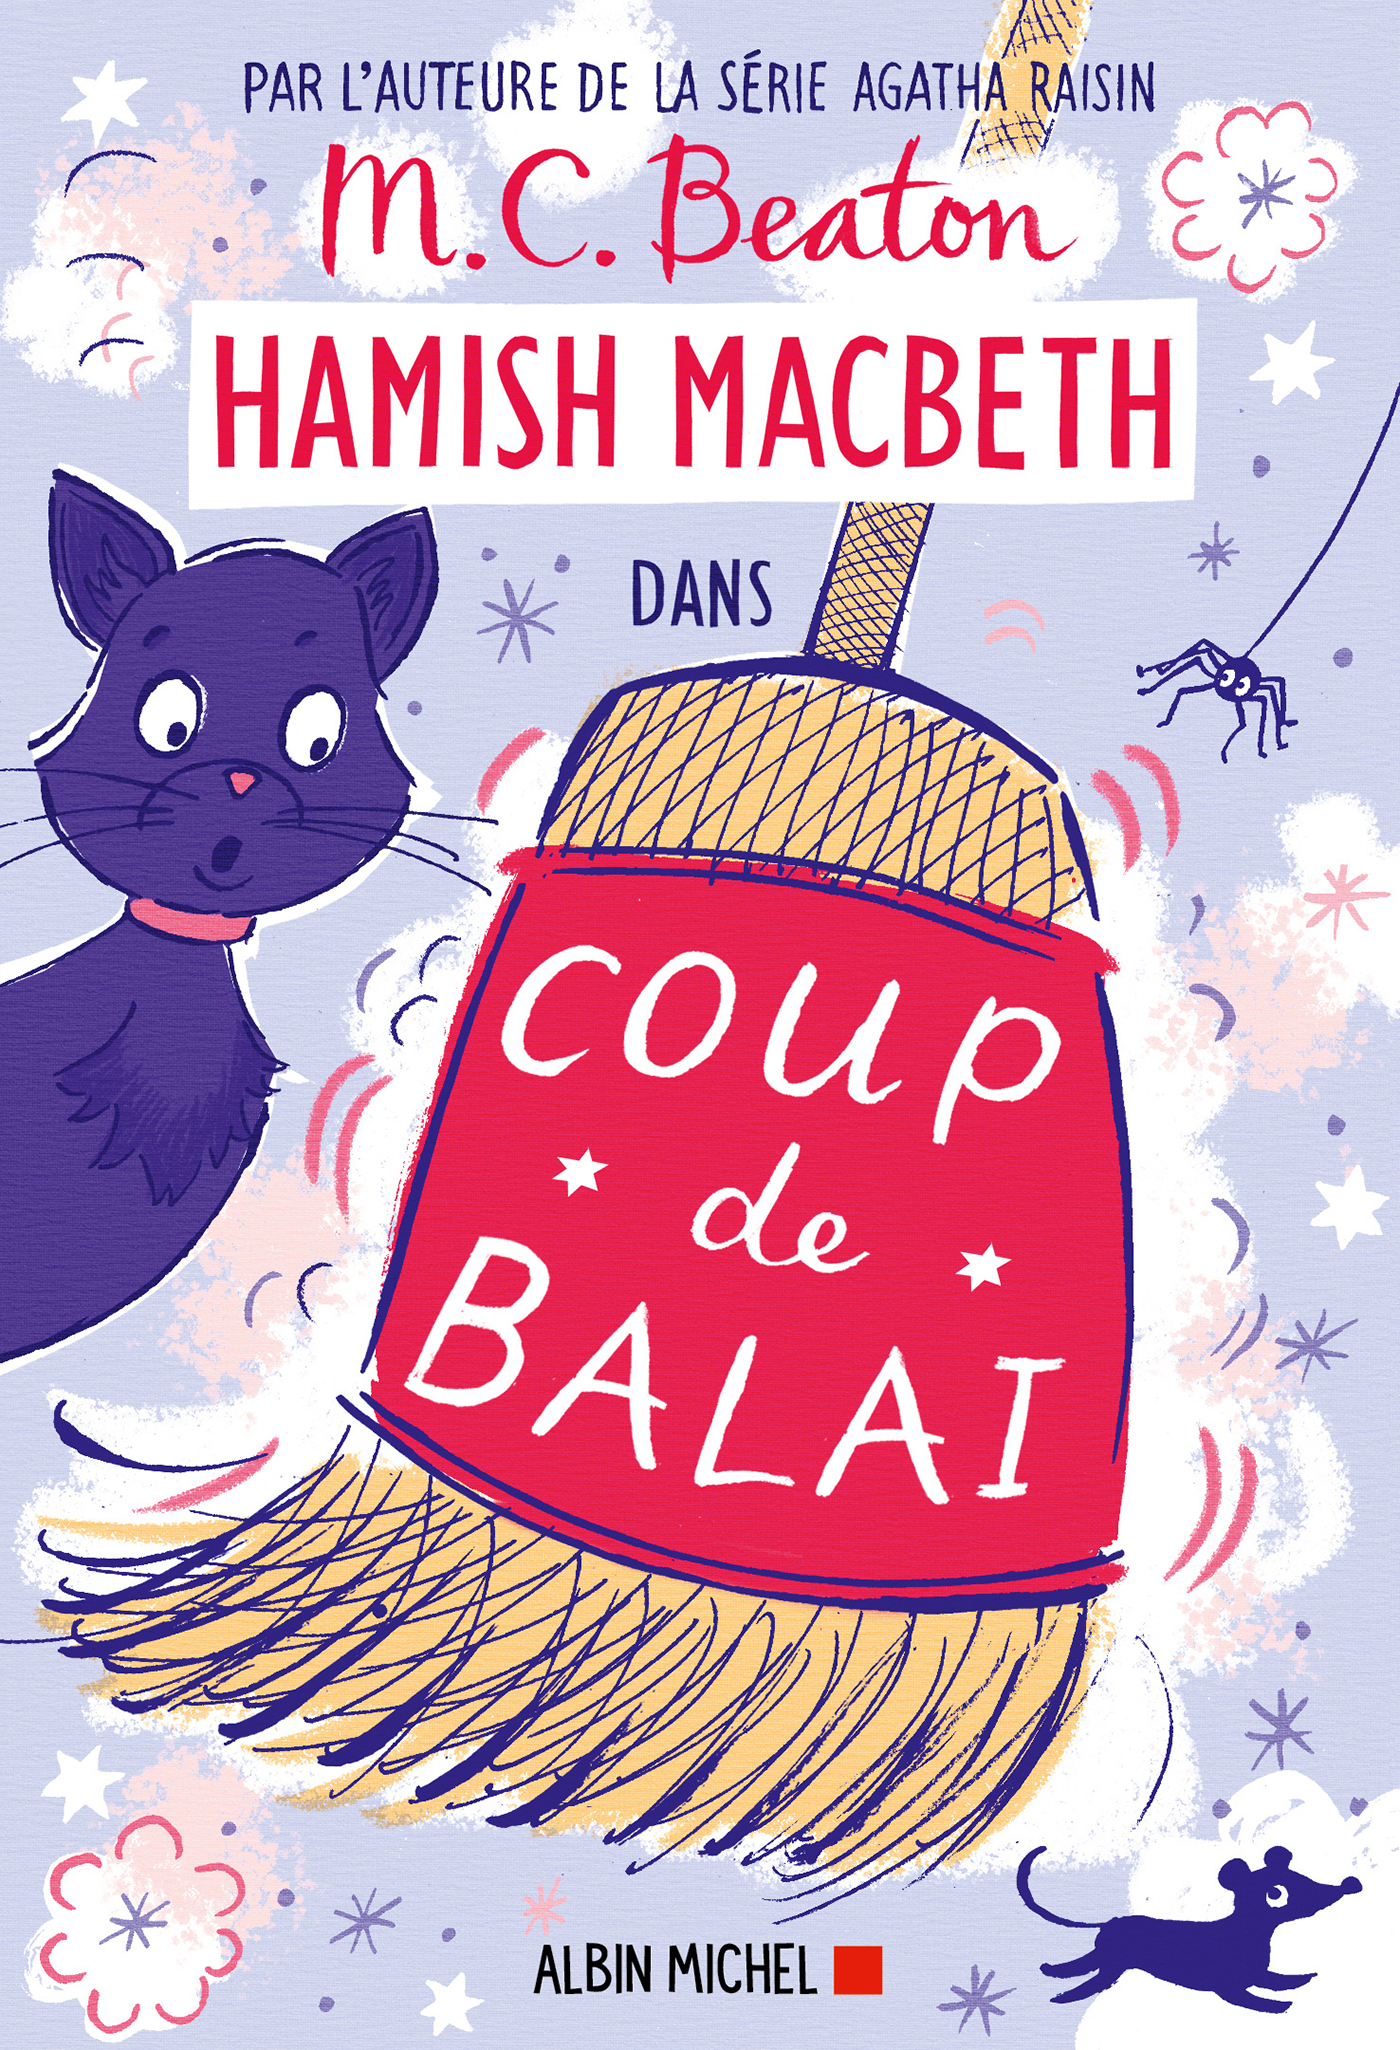 Couverture du livre Hamish Macbeth 22 - Coup de balai